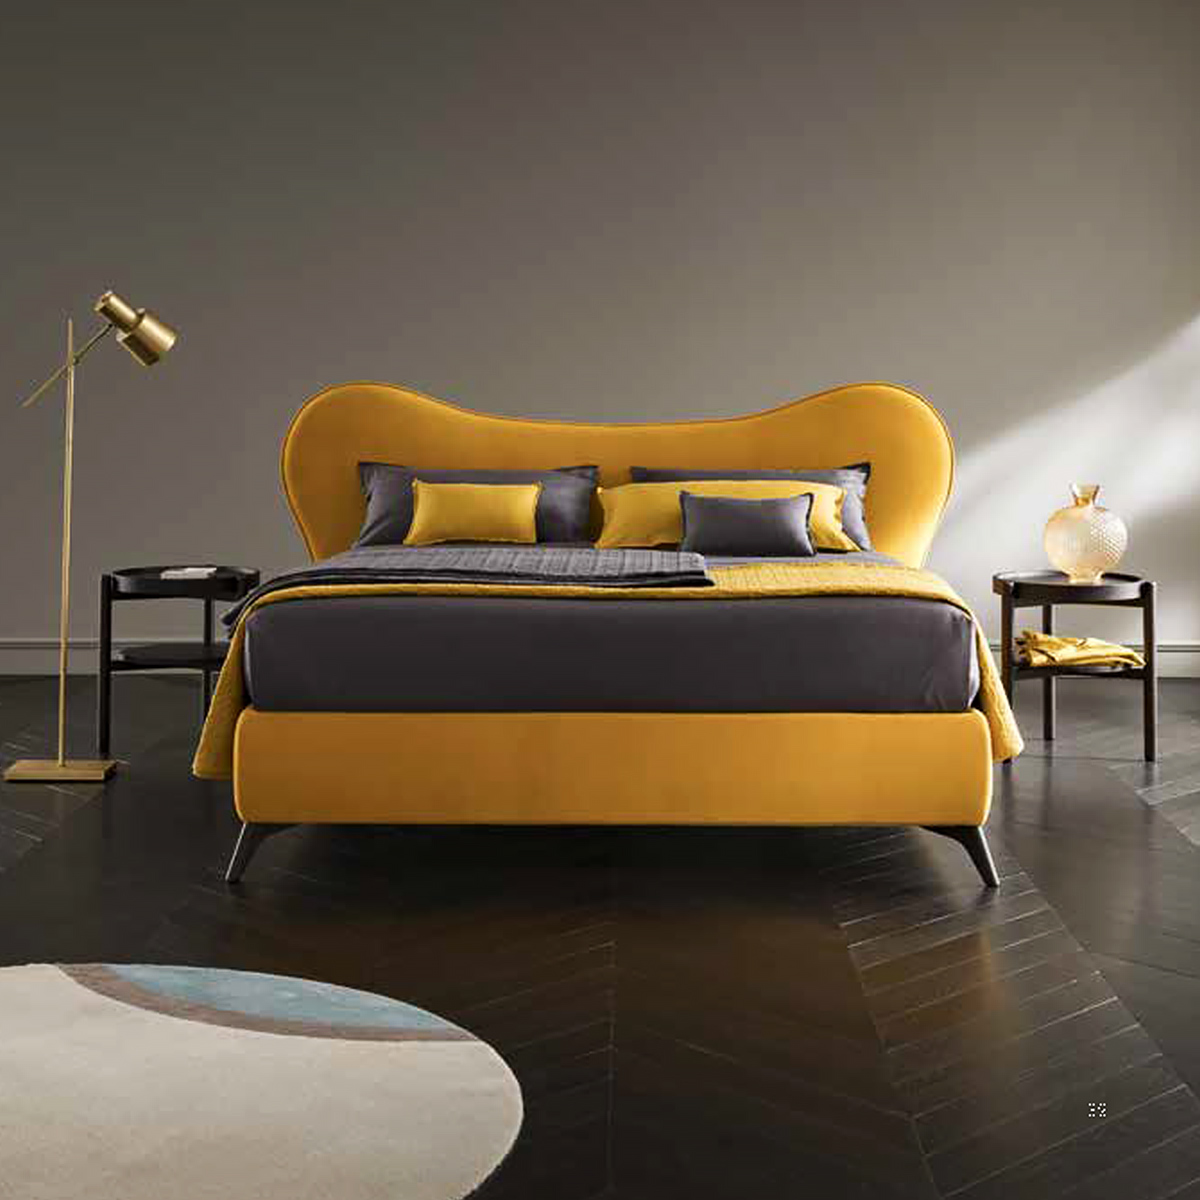 Altrenotti 義大利進口家具 軟墊床架 臥室家具 進口床架 義大利床頭設計 床墊寢具 Mickey Bed 床墊 國際名床